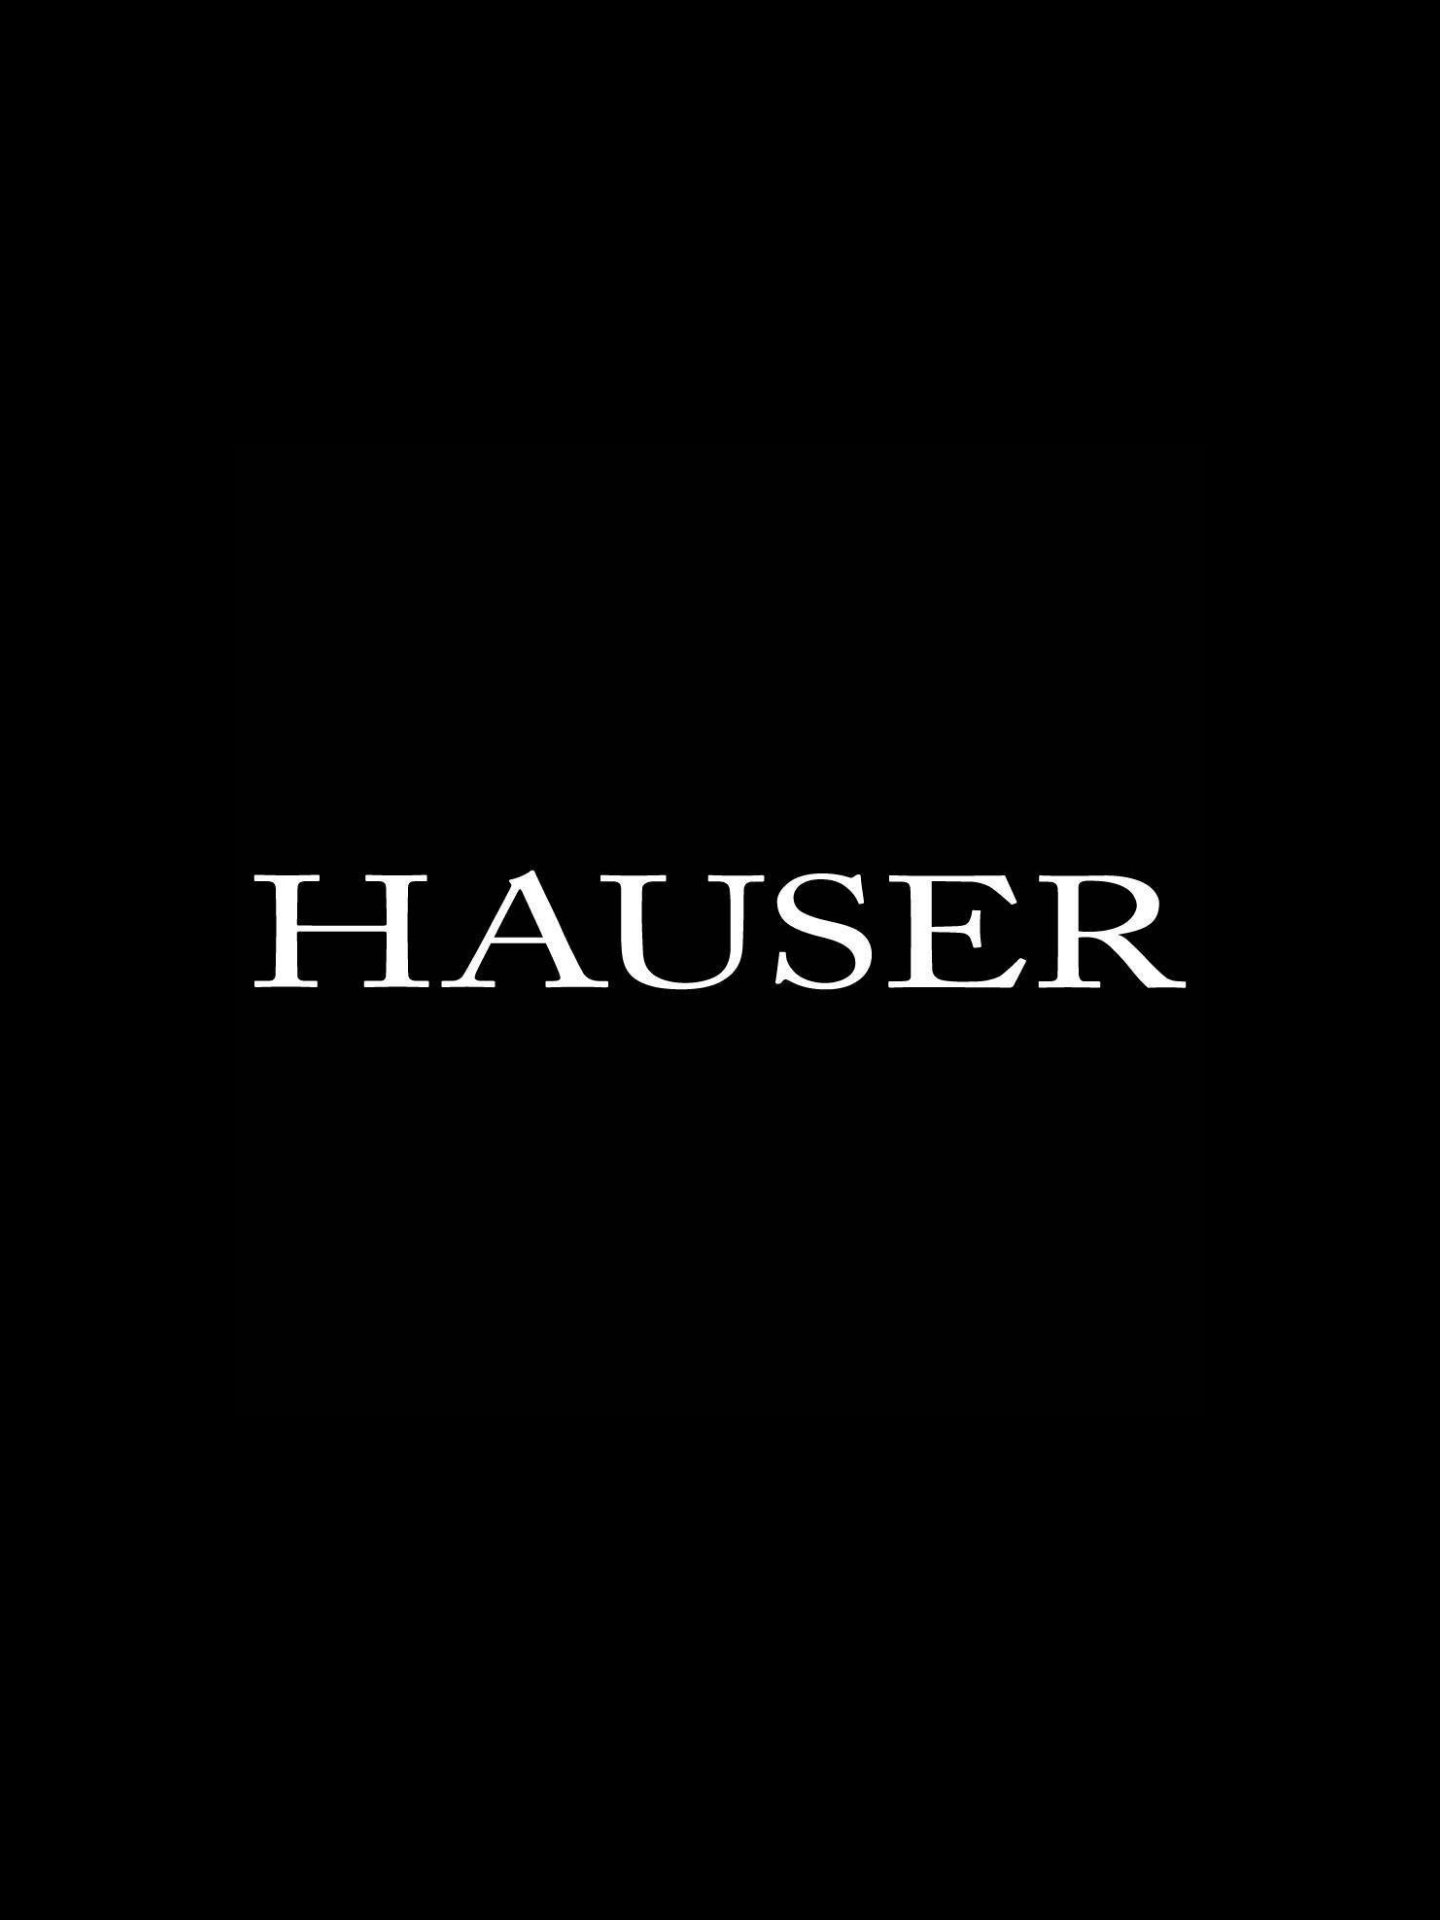 Hauser Logo.jpg